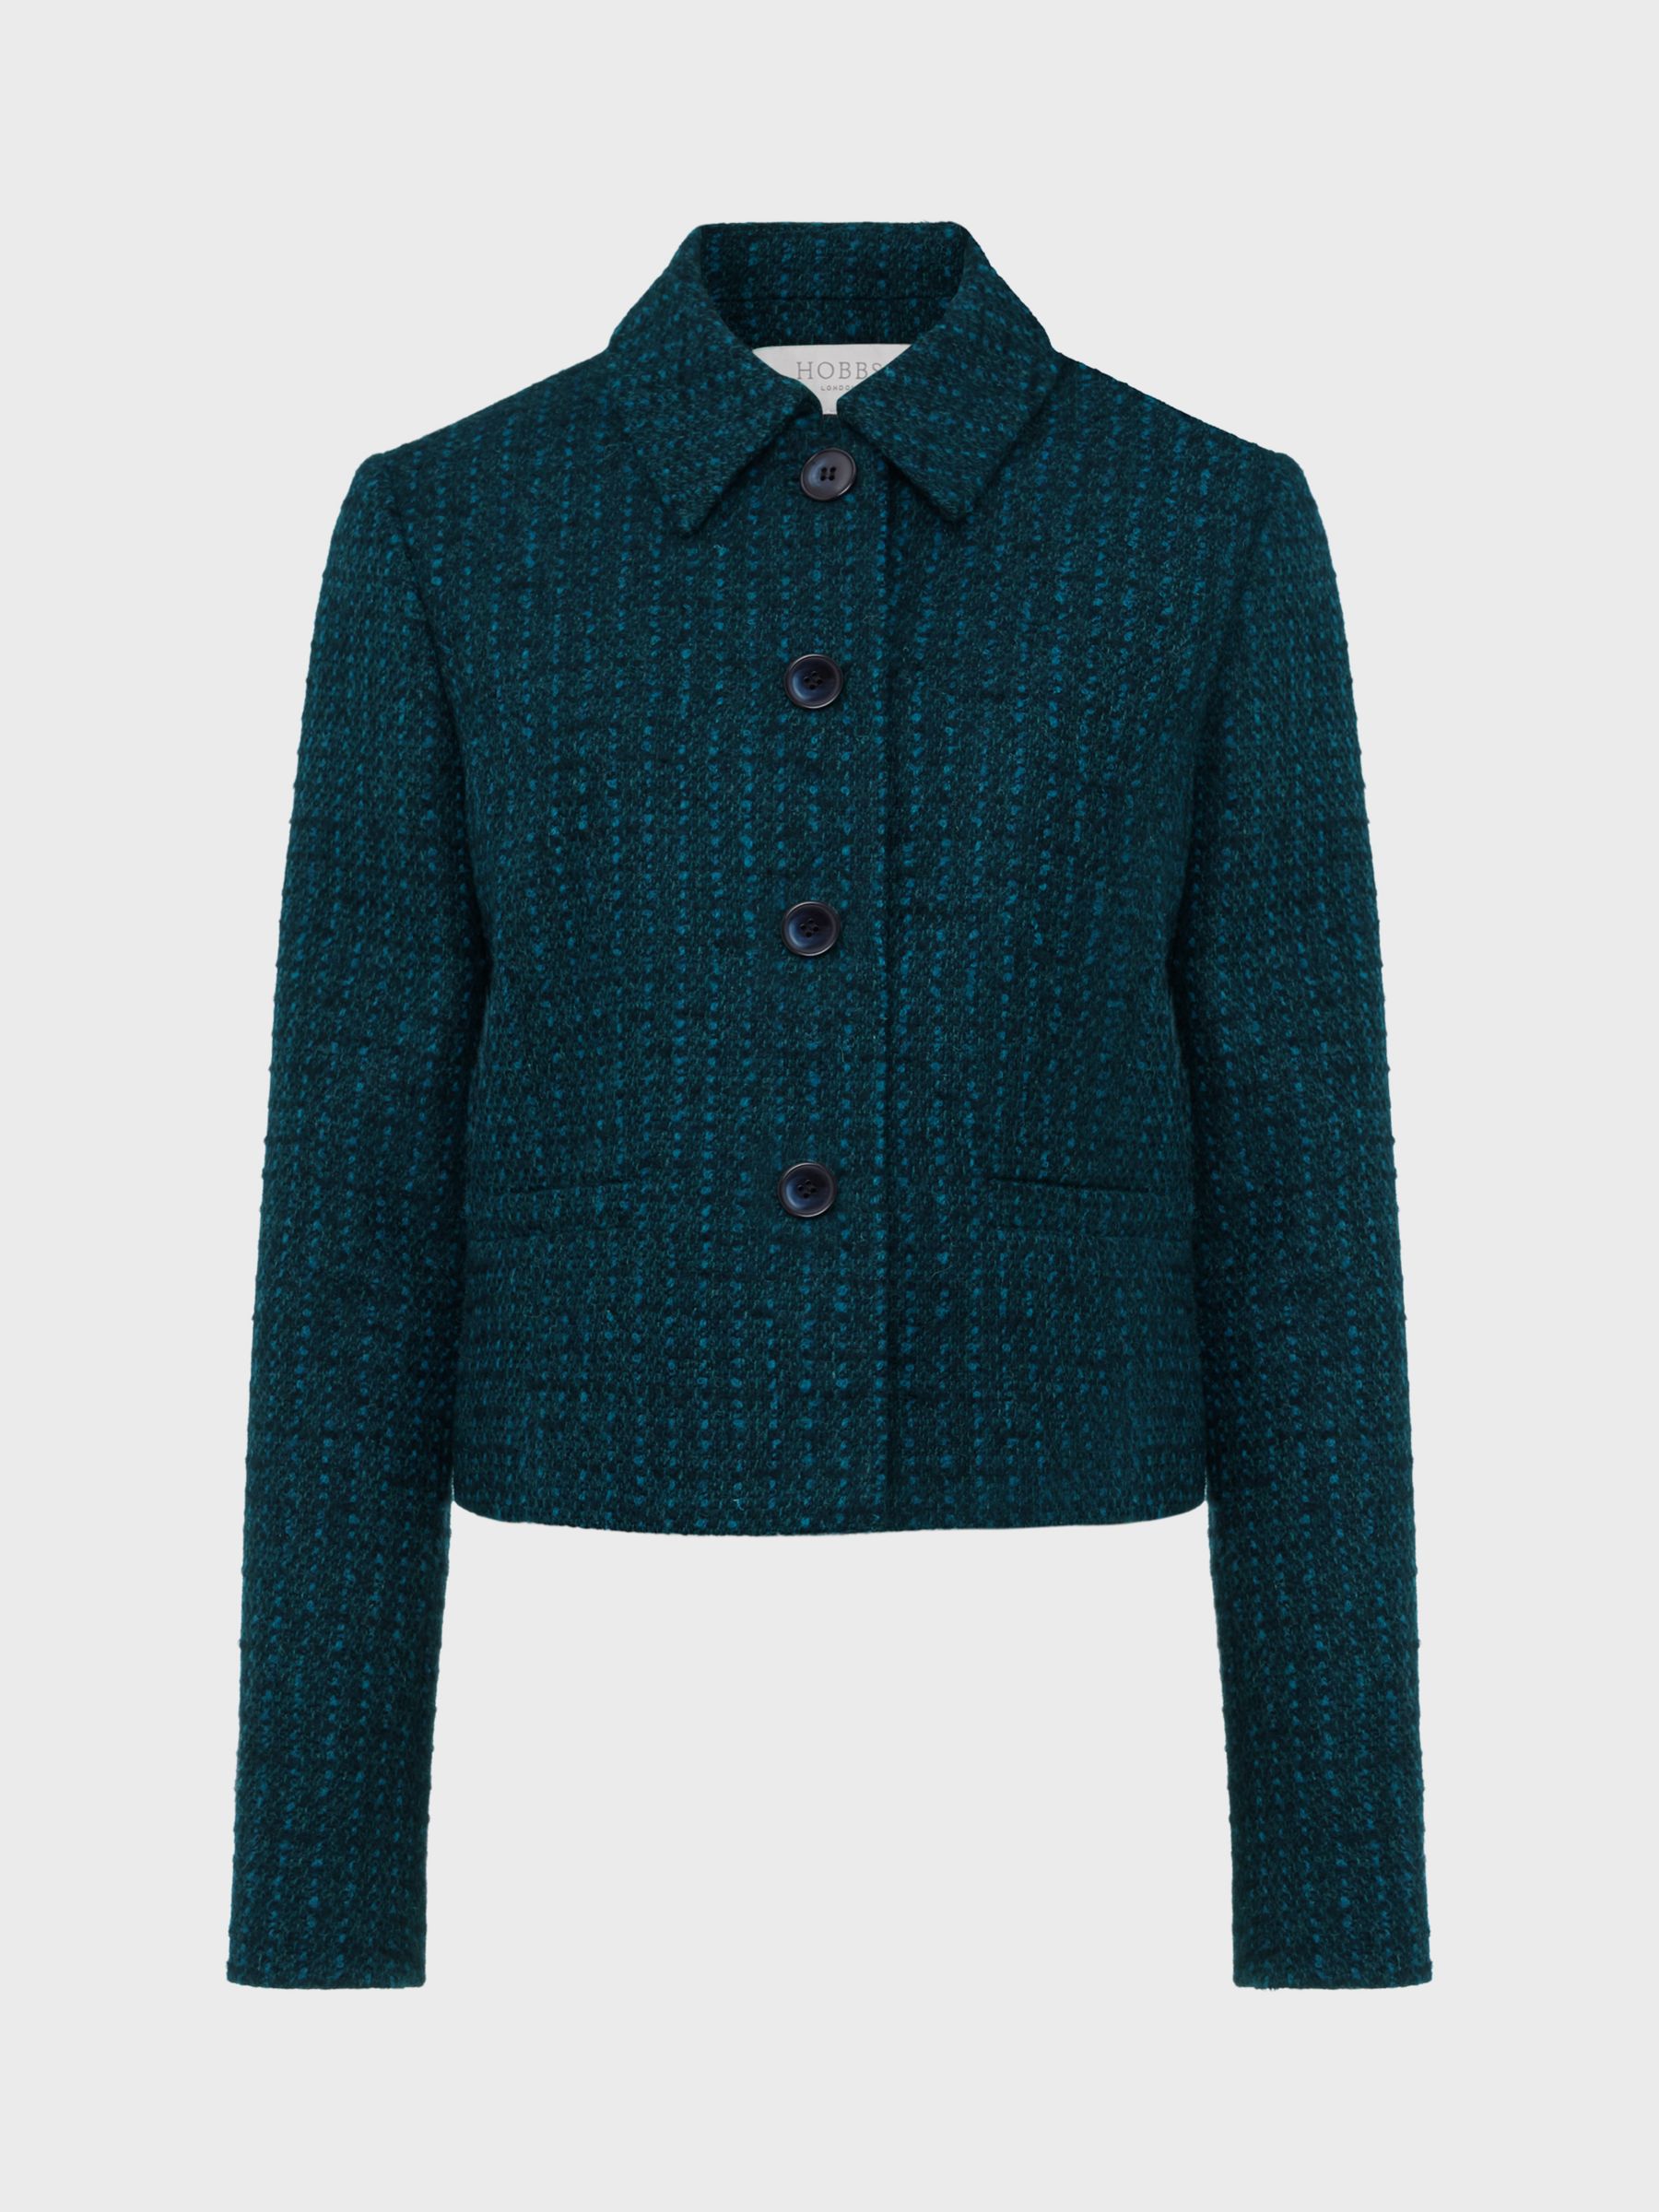 Hobbs Teia Wool Blend Boucle Jacket, Deep Teal at John Lewis & Partners